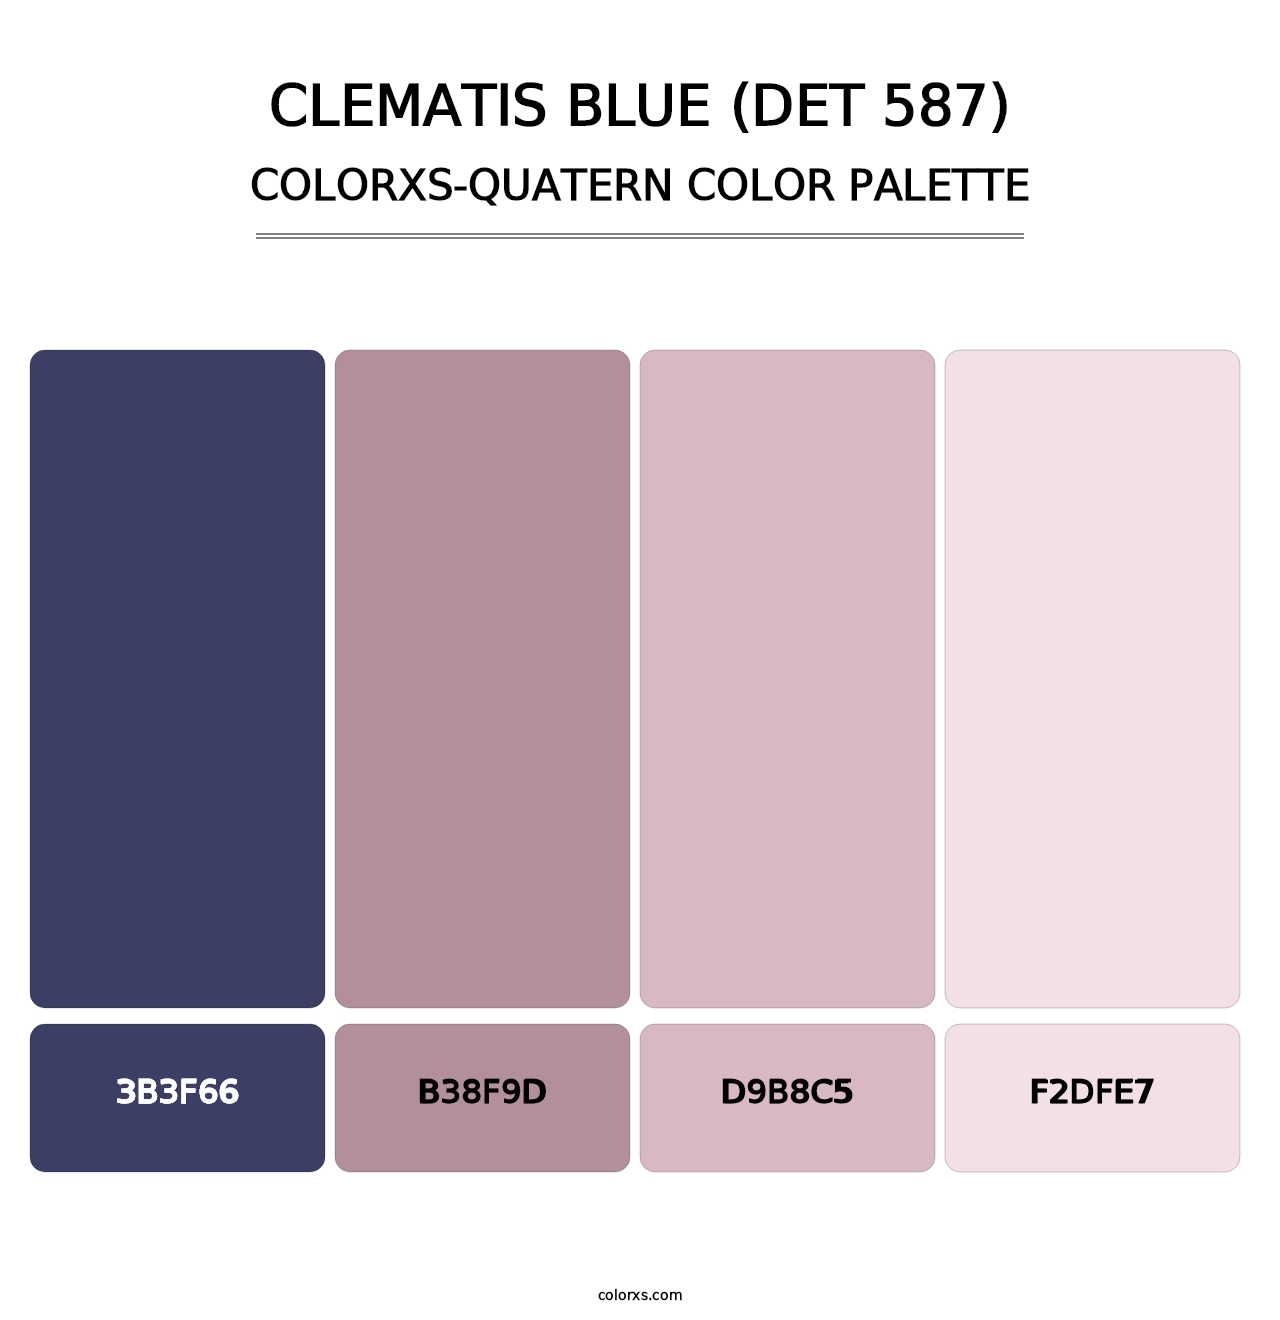 Clematis Blue (DET 587) - Colorxs Quatern Palette